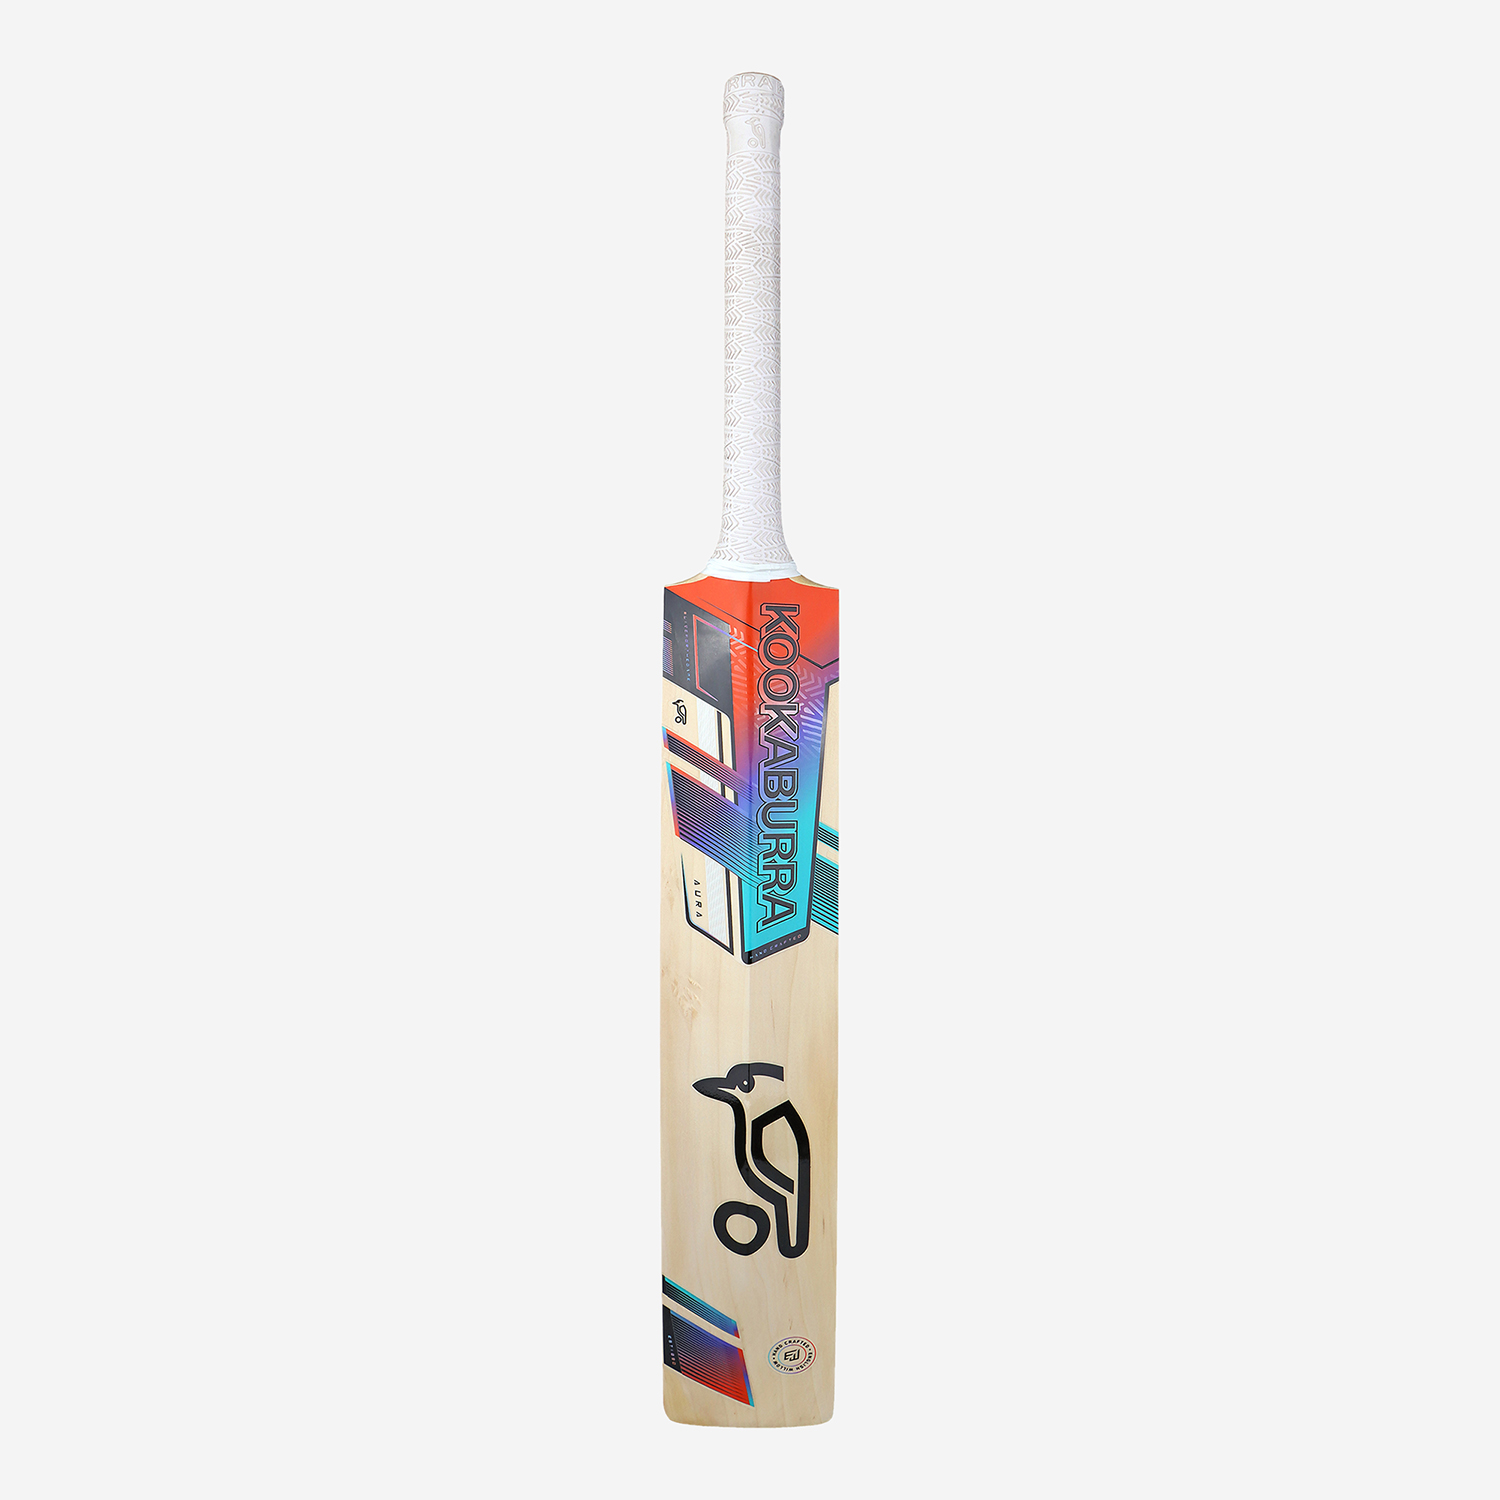 Pro 7.0 Aura Senior Cricket Bat